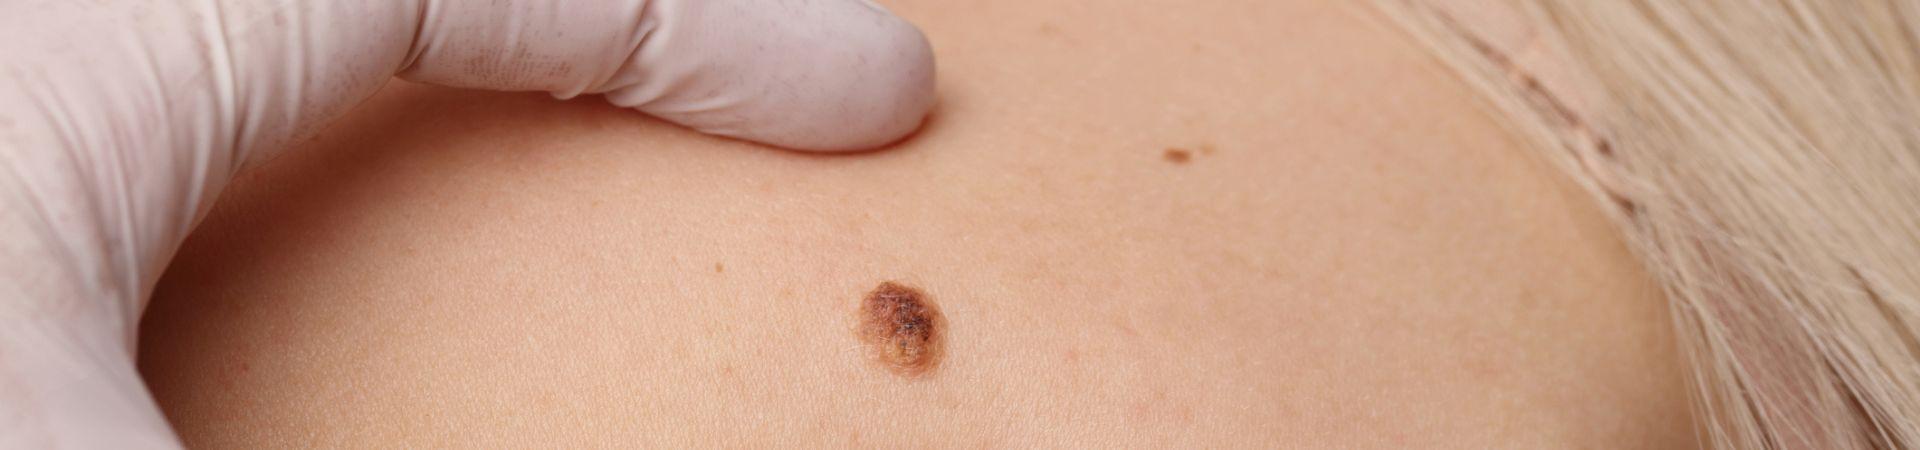 Tumori della pelle: prevenzione e diagnosi precoce